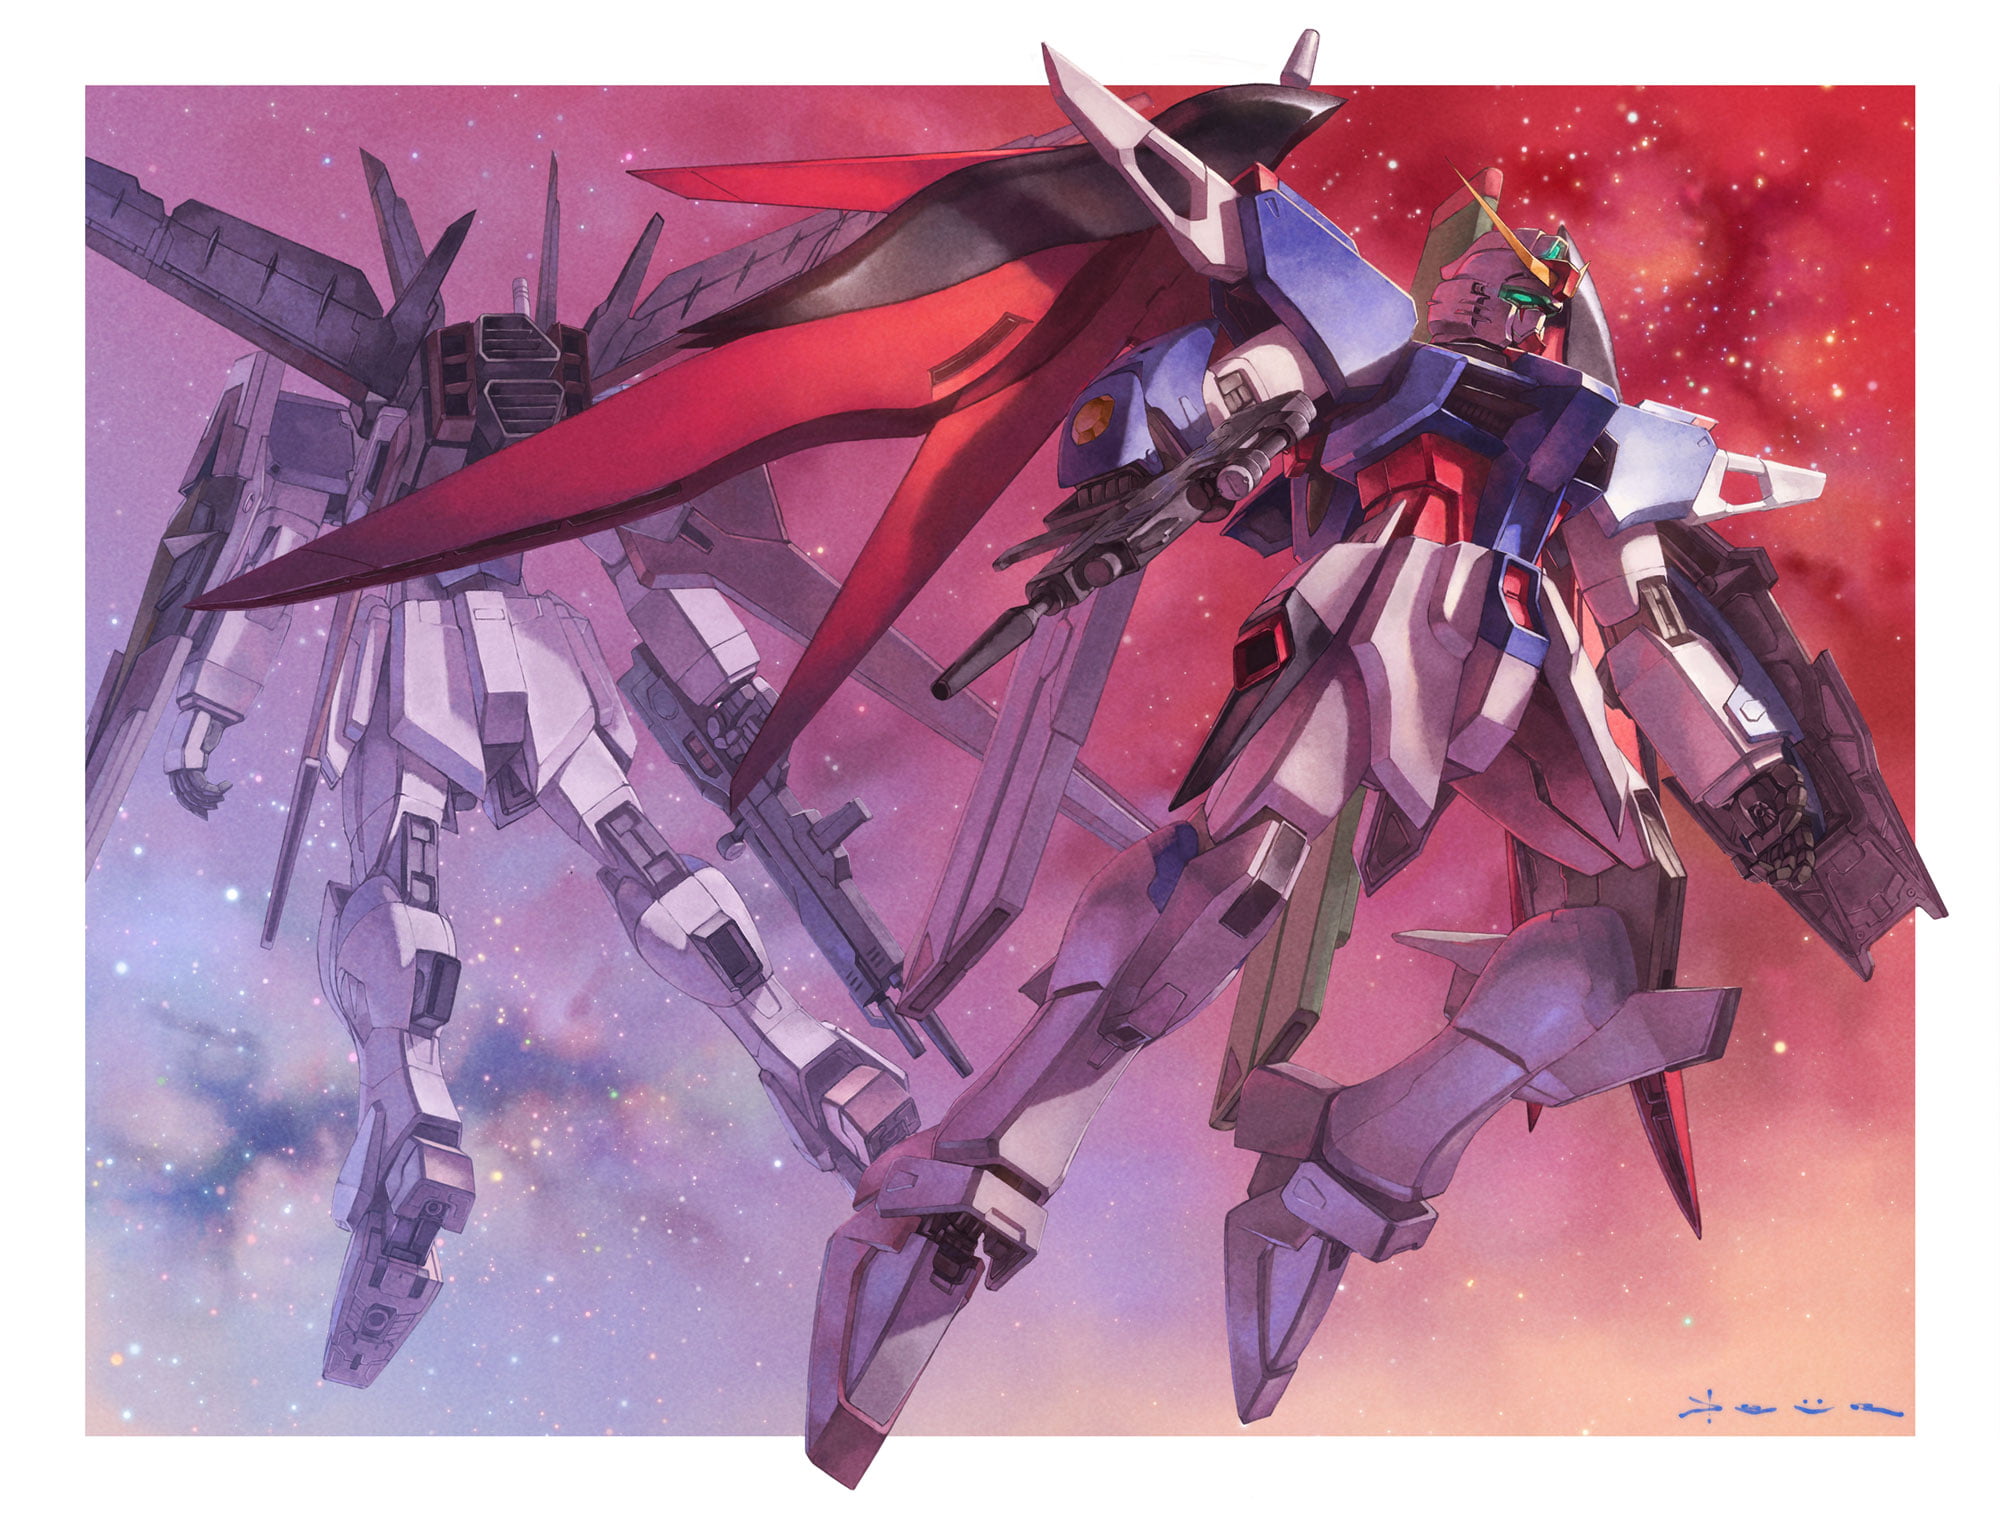 anime, mechs, Super Robot Taisen, Gundam, artwork, digital art